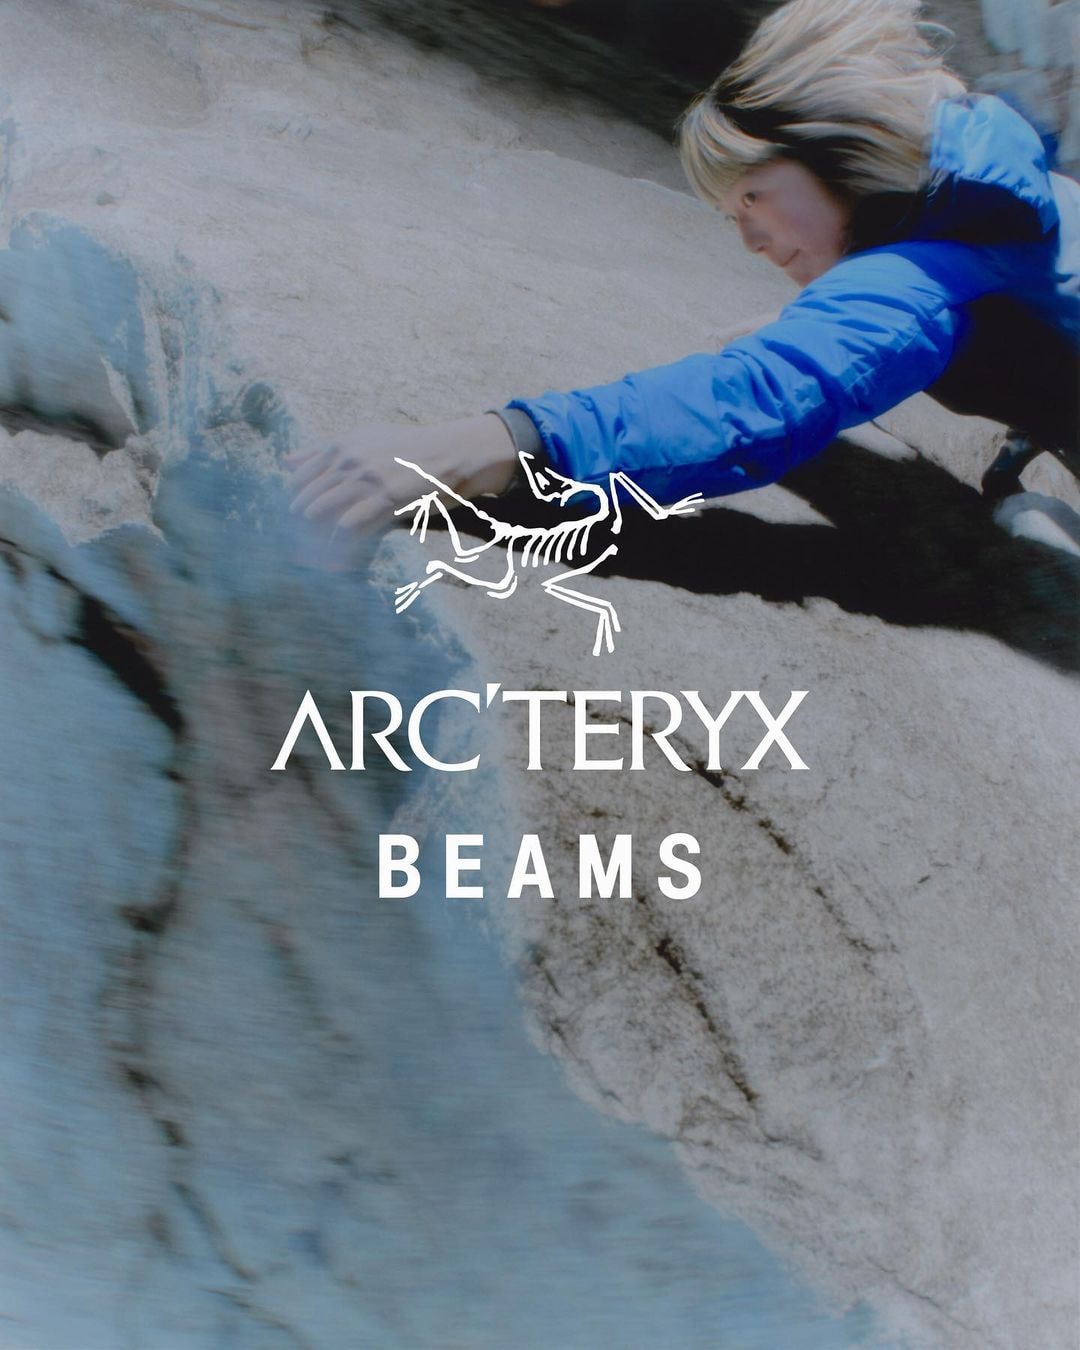 BEAMS x Arc'teryx 全新聯名系列即將登場